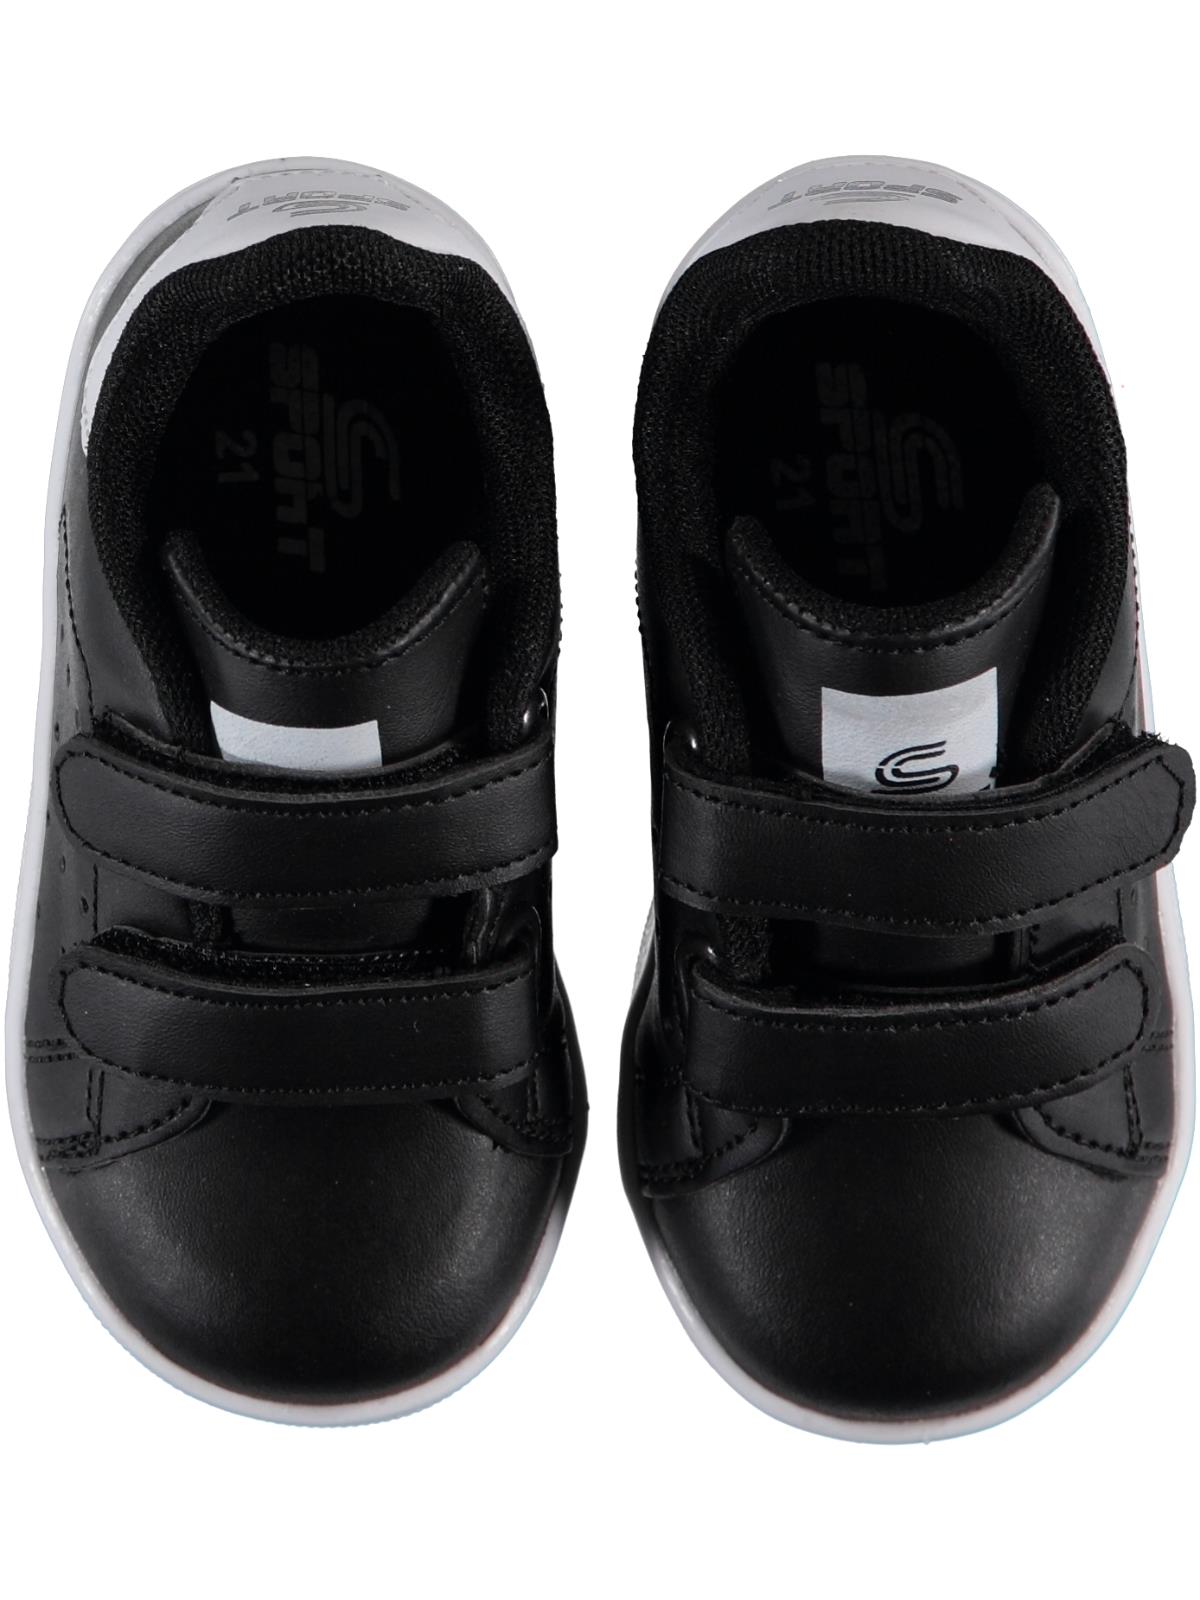 Sport Erkek Bebek Spor Ayakkabı 21-25 Numara Siyah